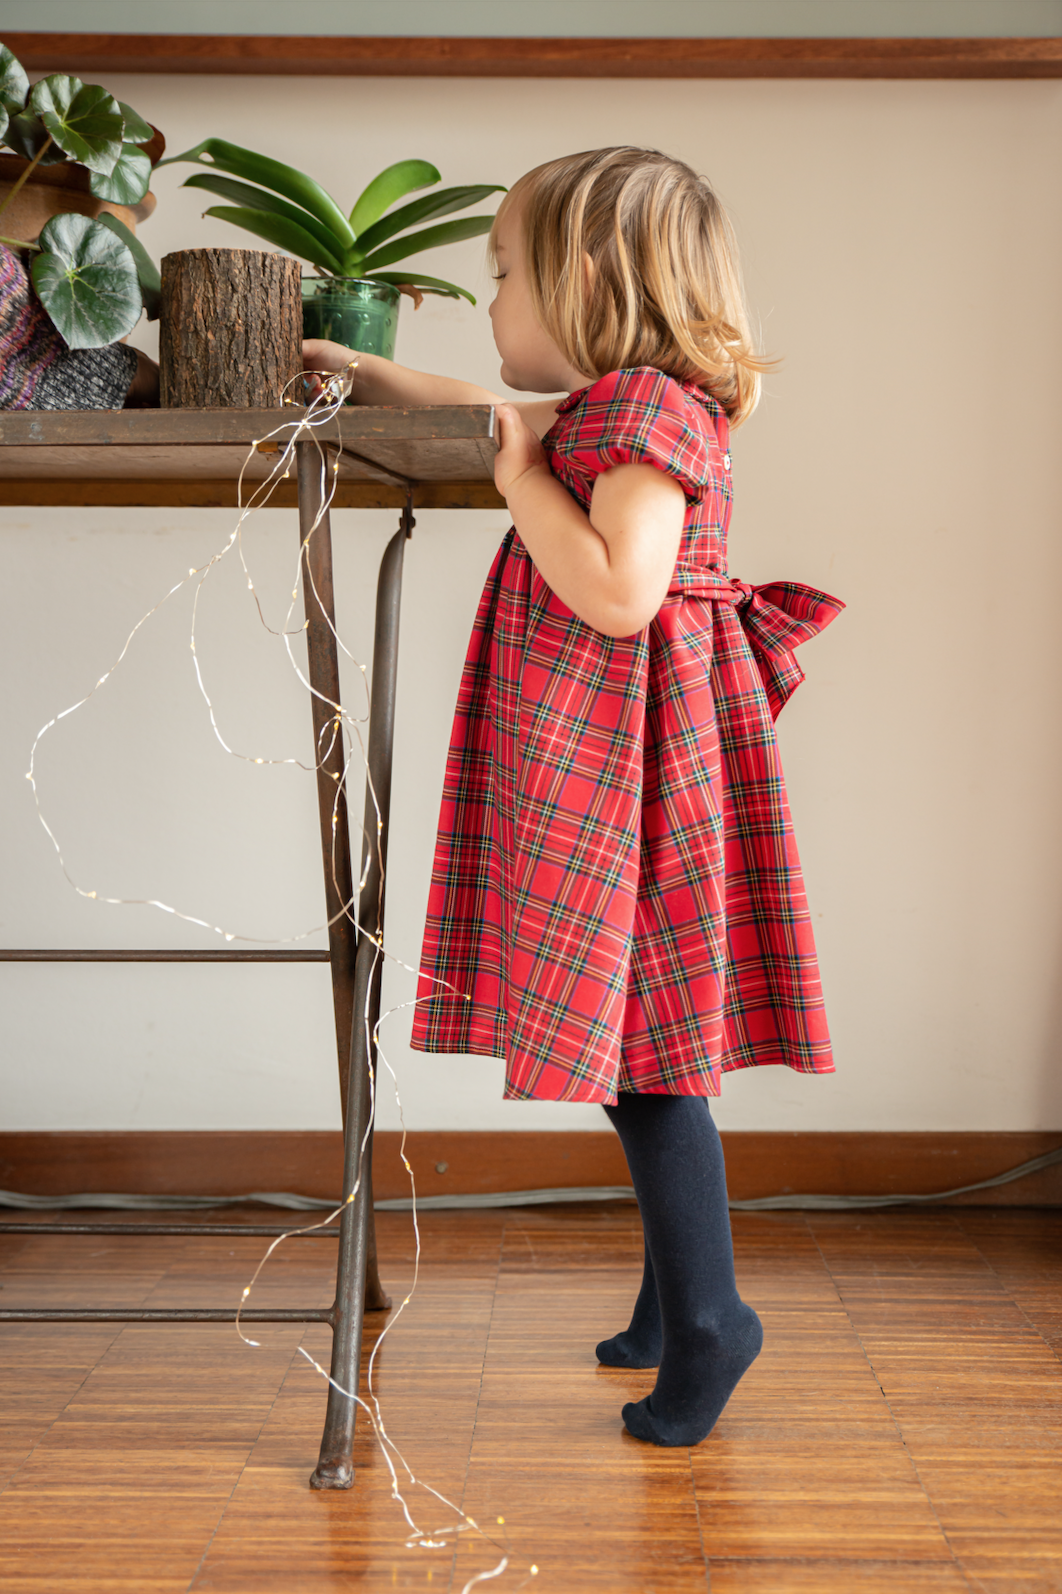 Natale alle porte: cosa indosseranno i bambini? — Crochette